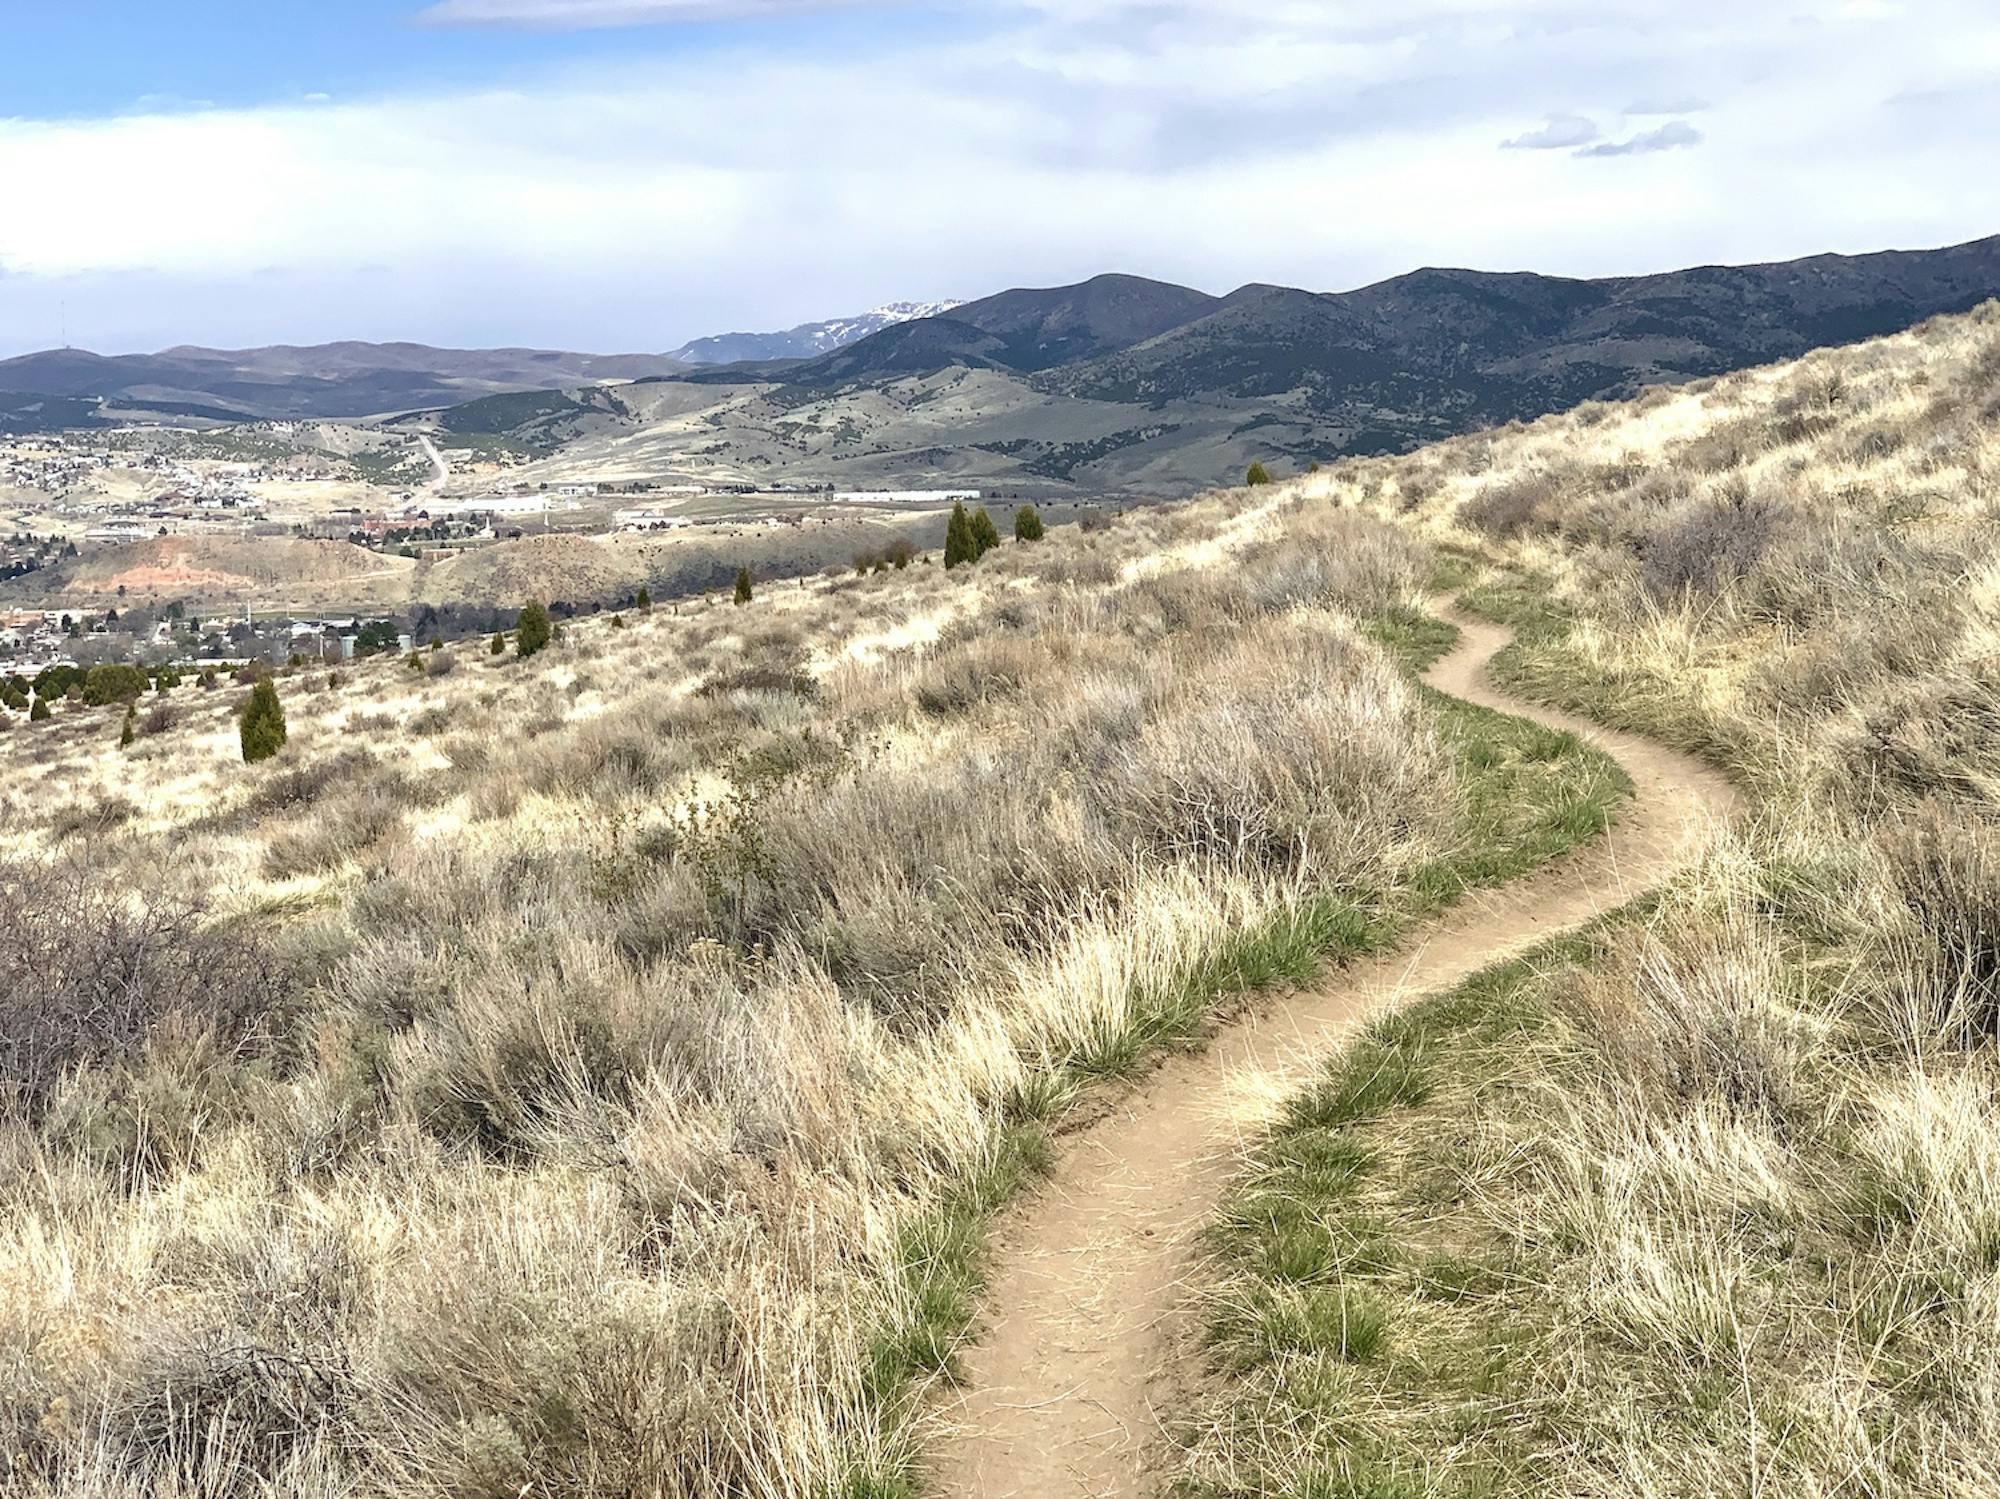 Mountain bike trail in Pocatello, Idaho